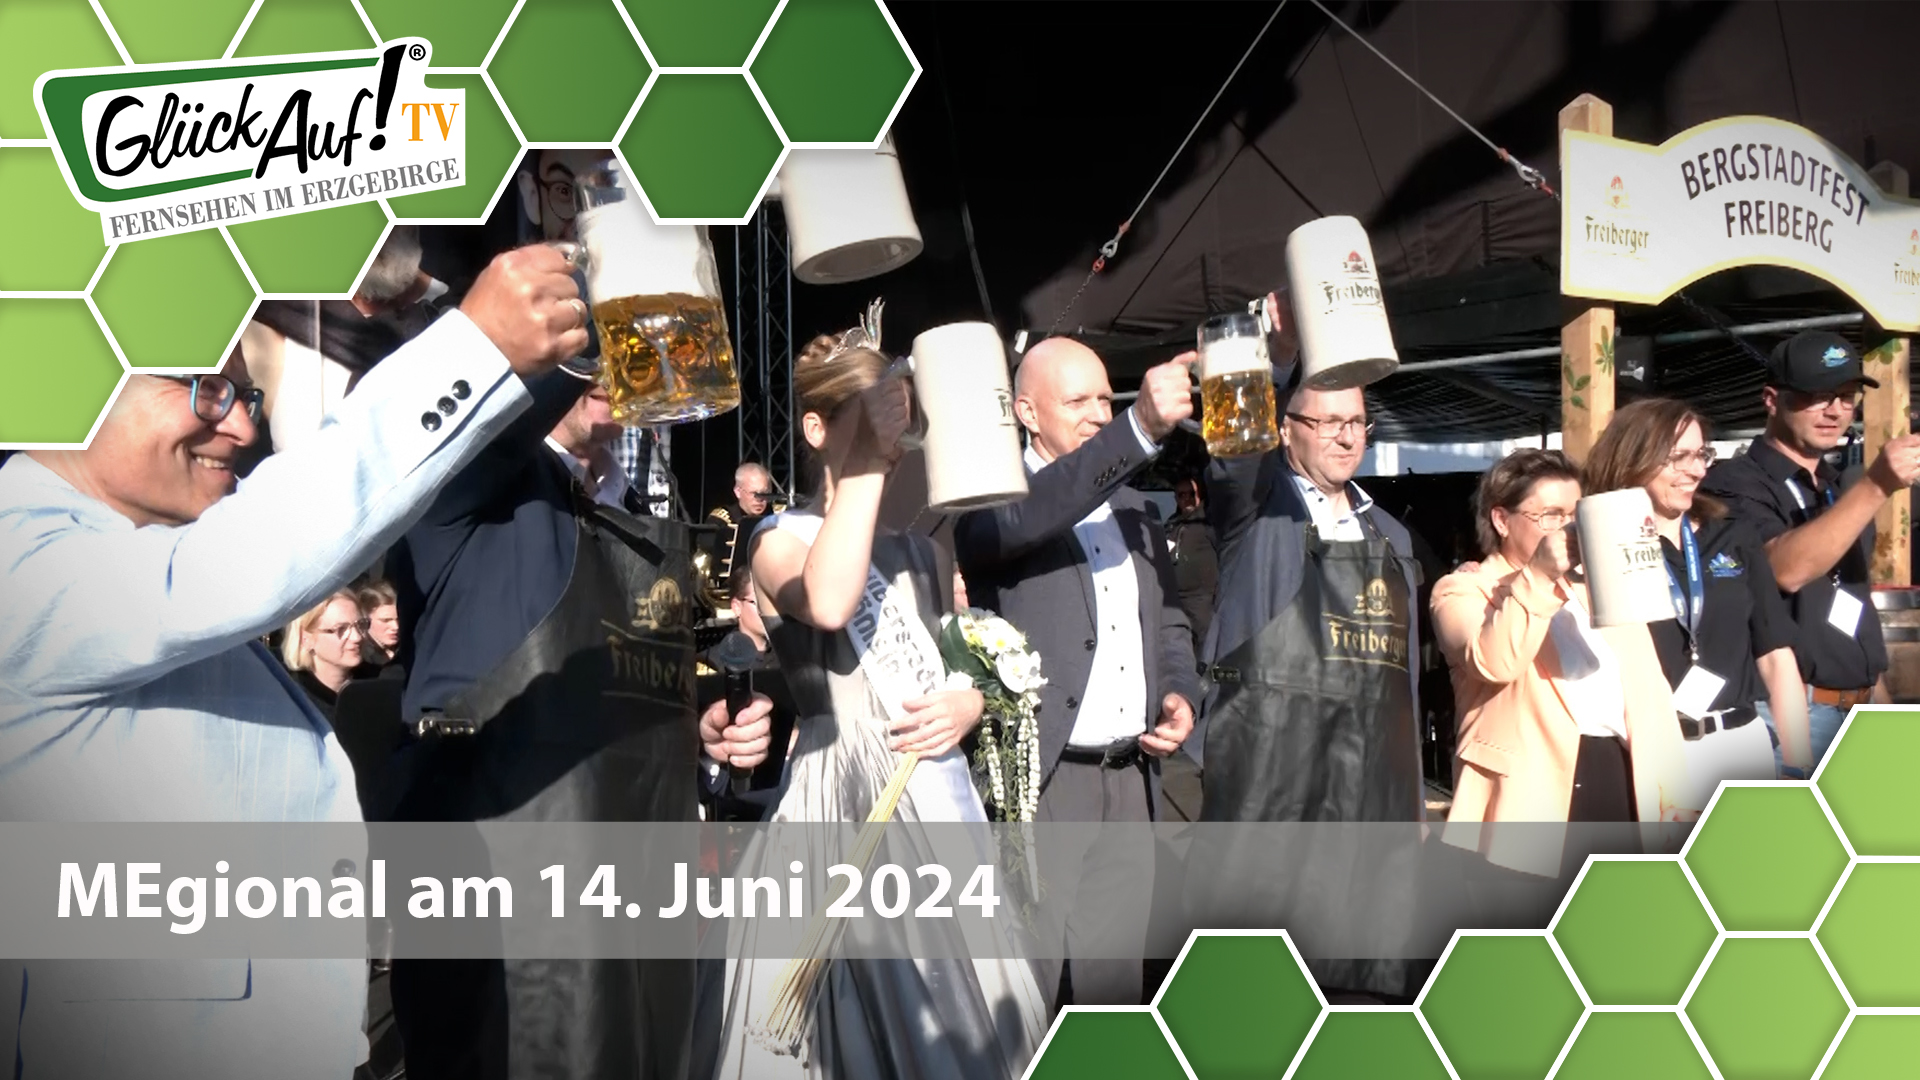 MEgional am 14. Juni 2024 mit der Eröffnung des Bergstadtfestes in Freiberg